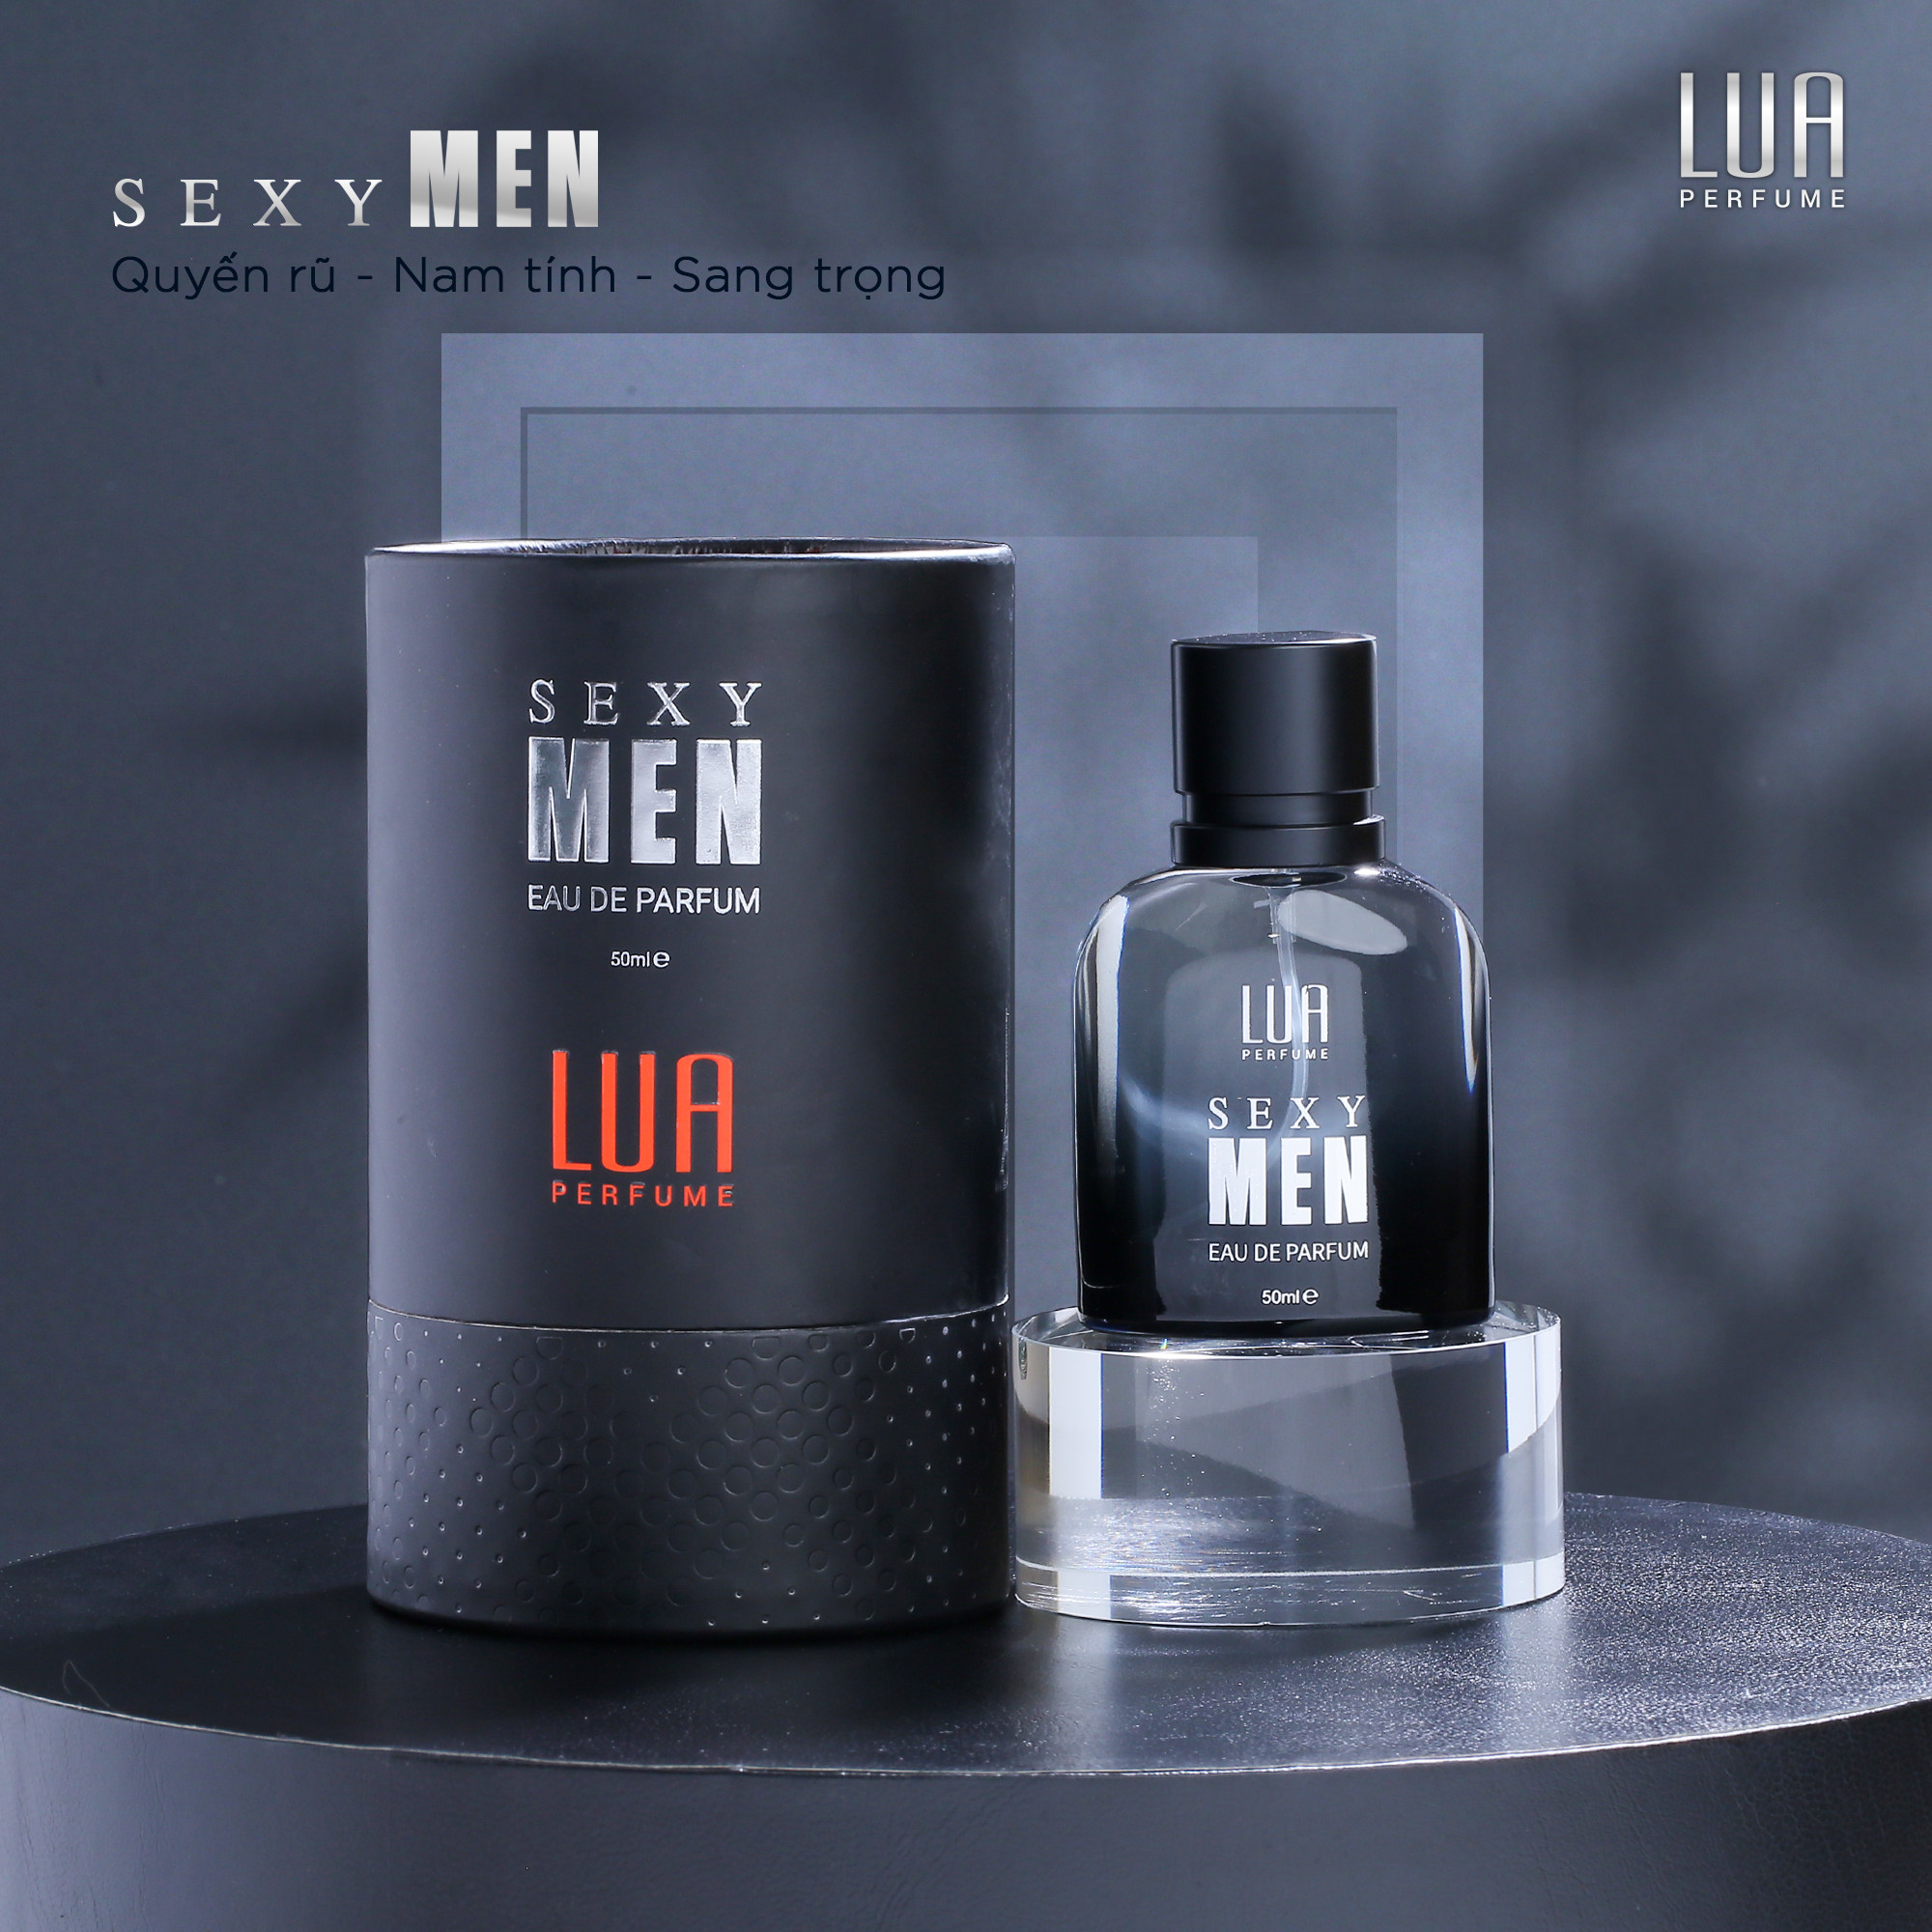 Nước Hoa Nam Sexy Men Phiên Bản Mới 50ml Lua Perfume Chính Hãng - 8936095372277